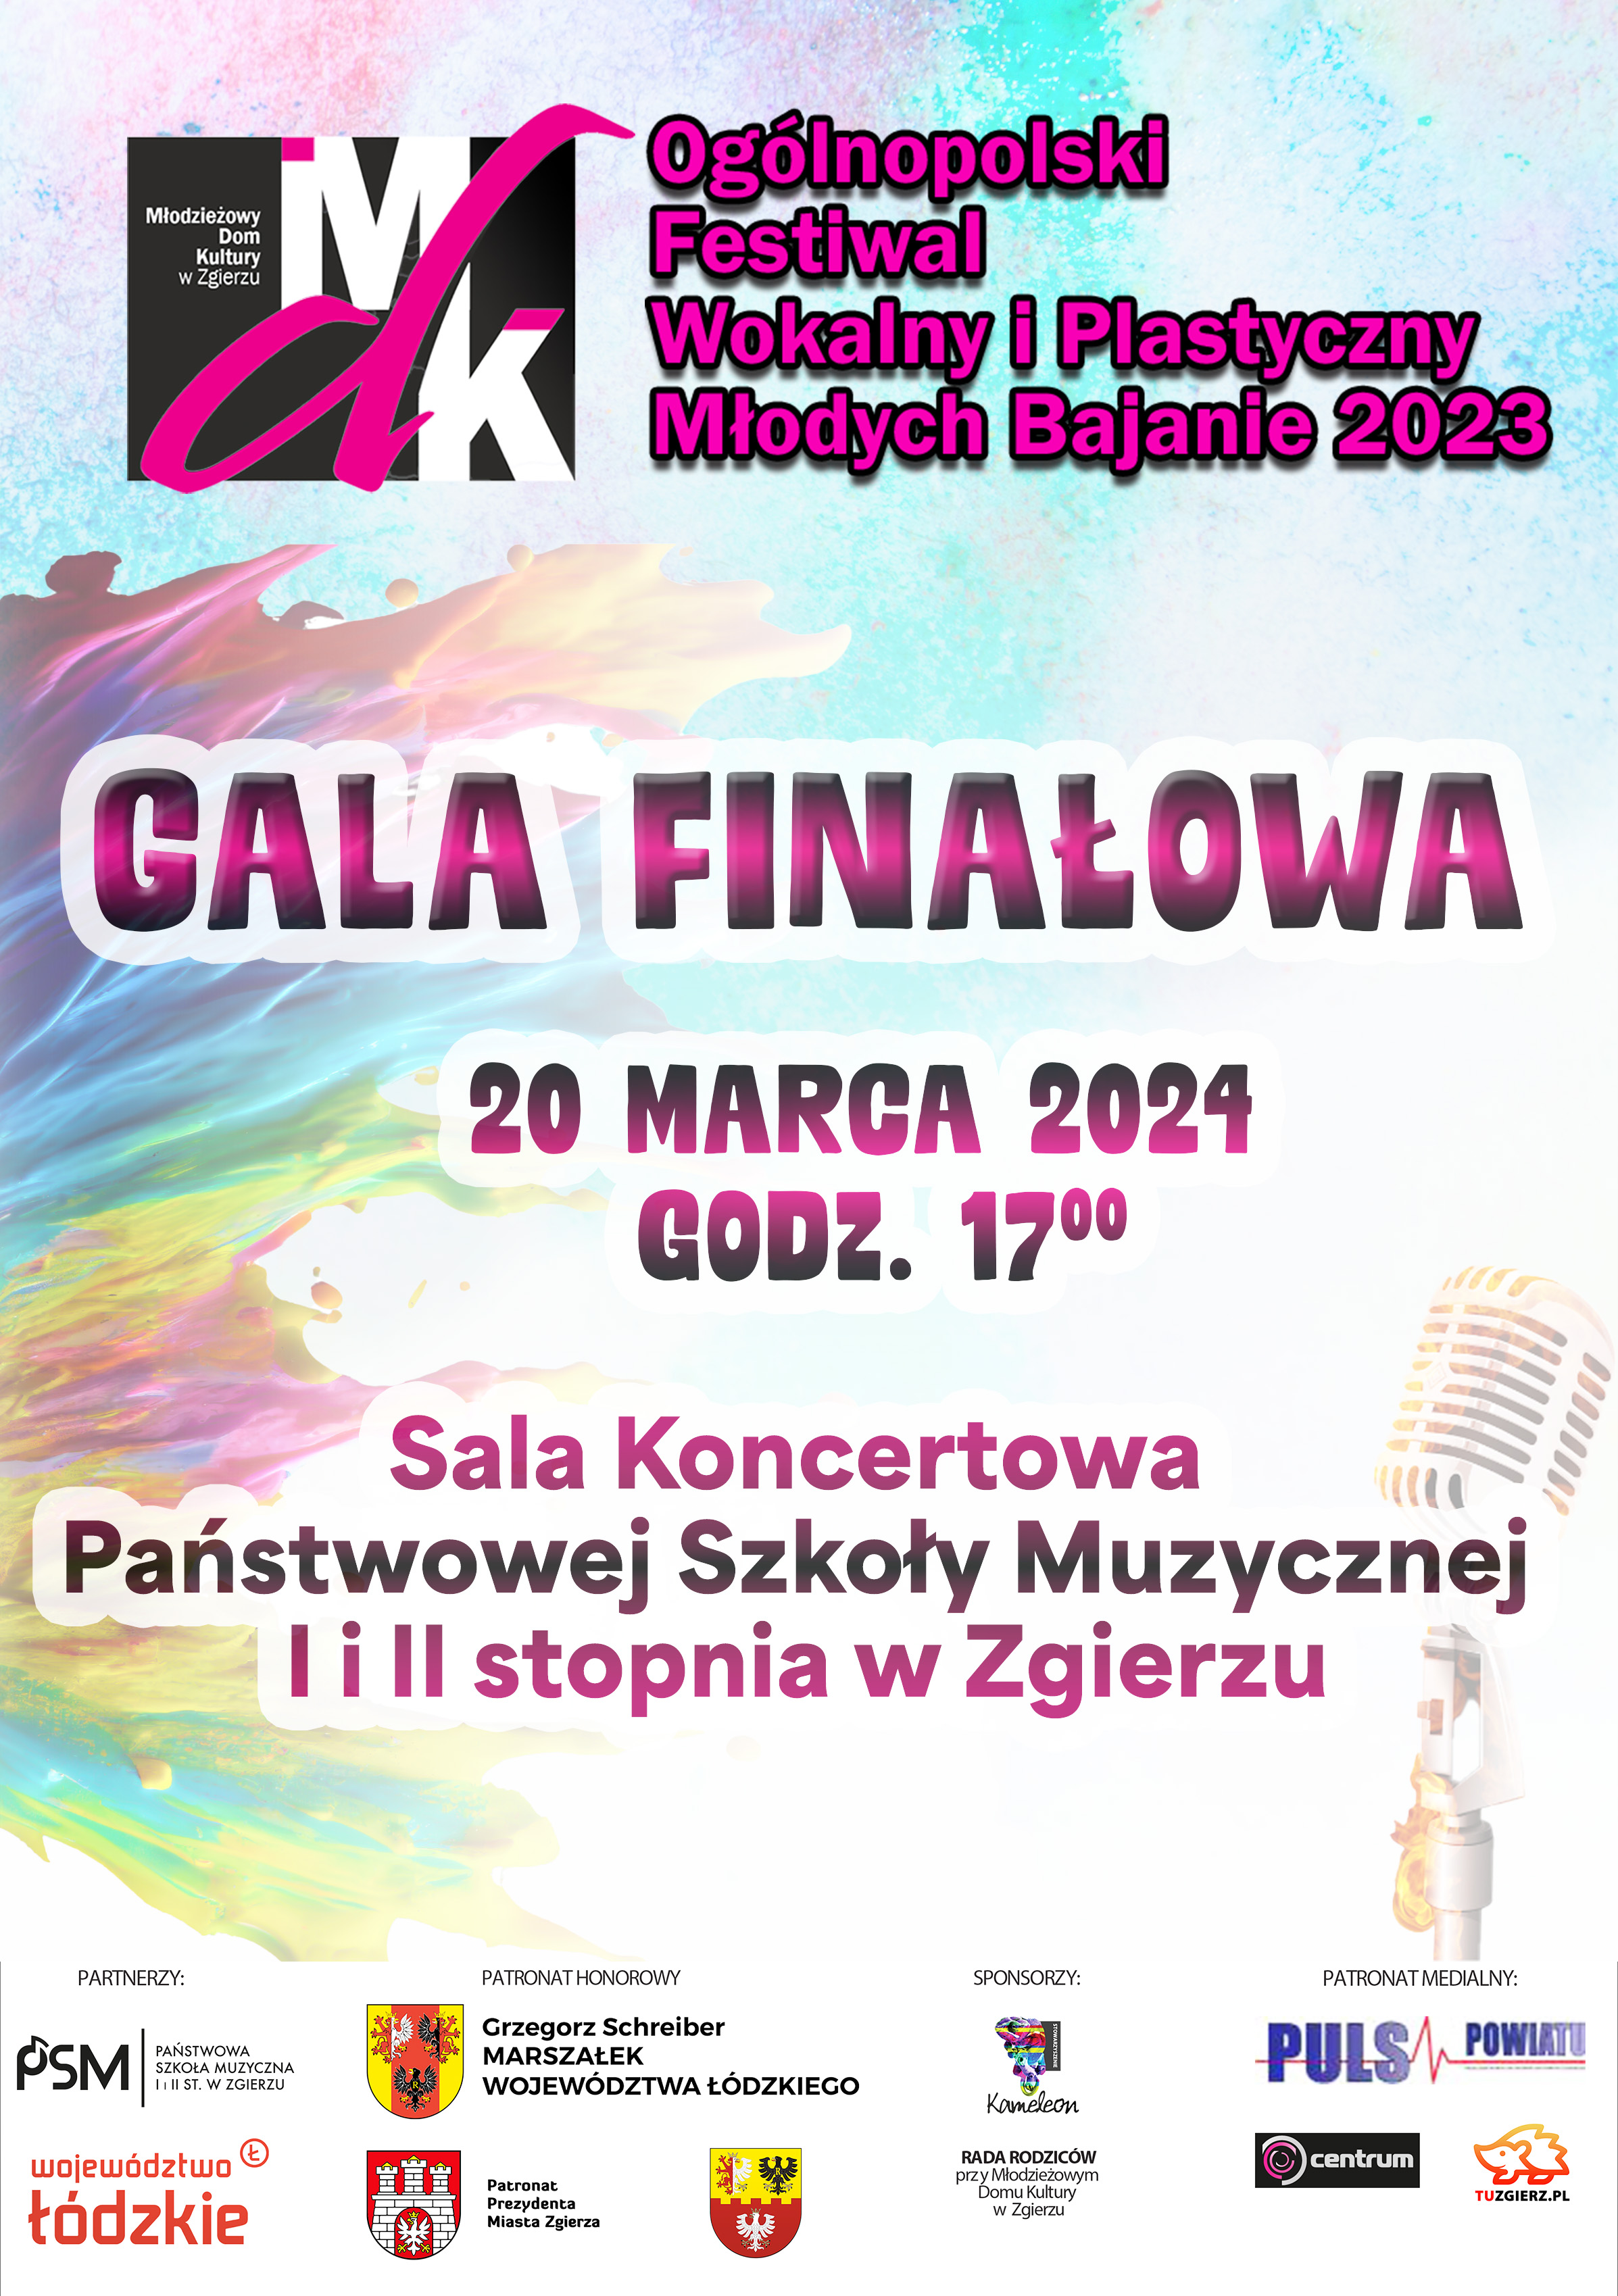 Ogólnopolski Festiwal Wokalny i Plastyczny Młodych Bajanie 2023